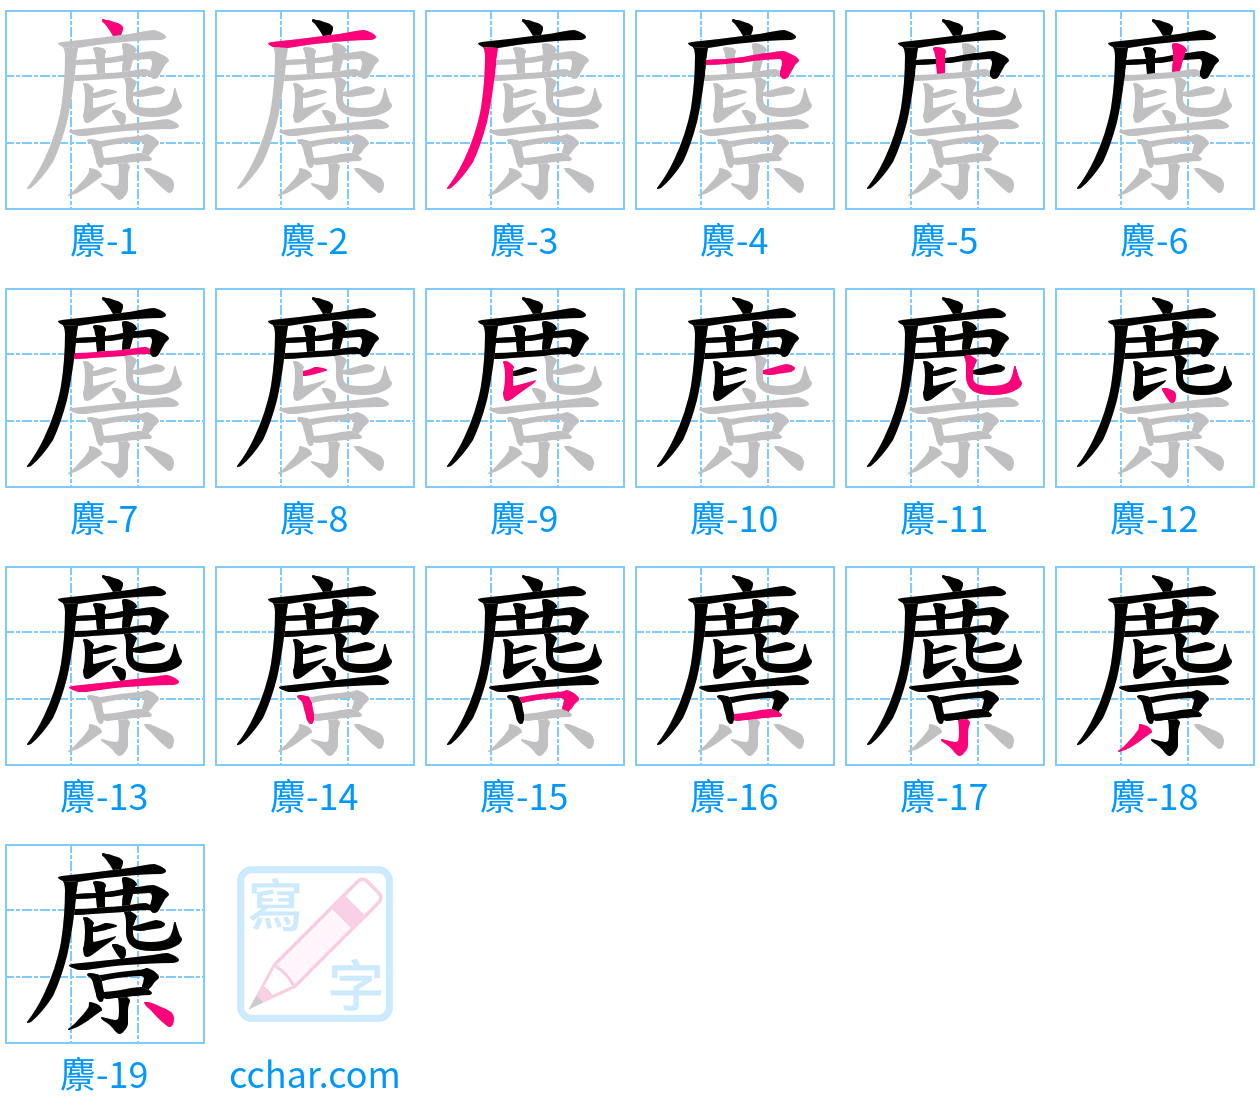 麖 stroke order step-by-step diagram